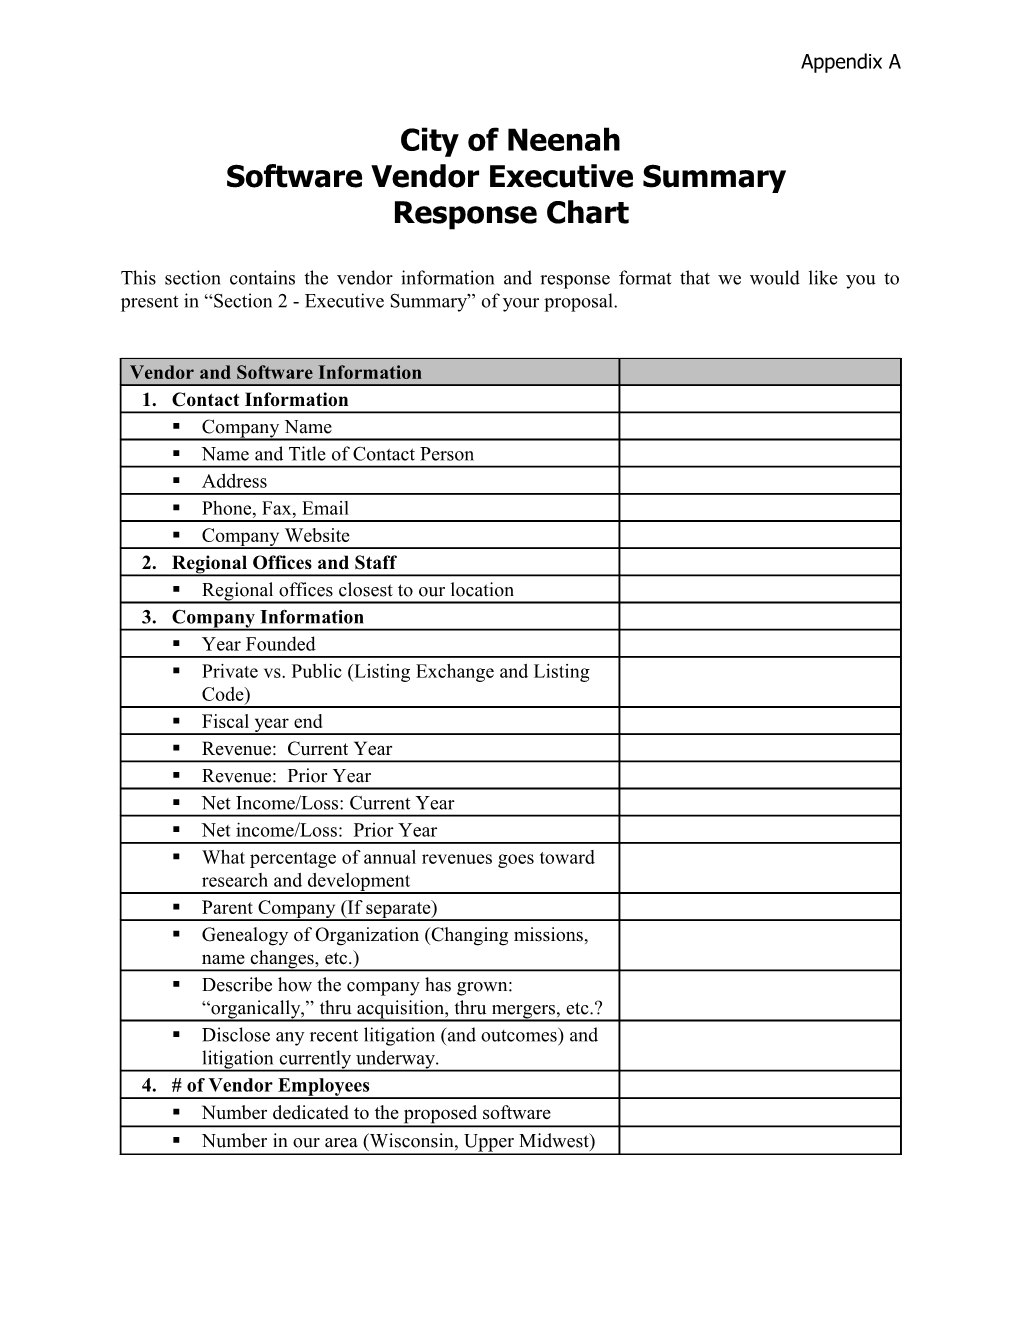 Software Vendor Executive Summary